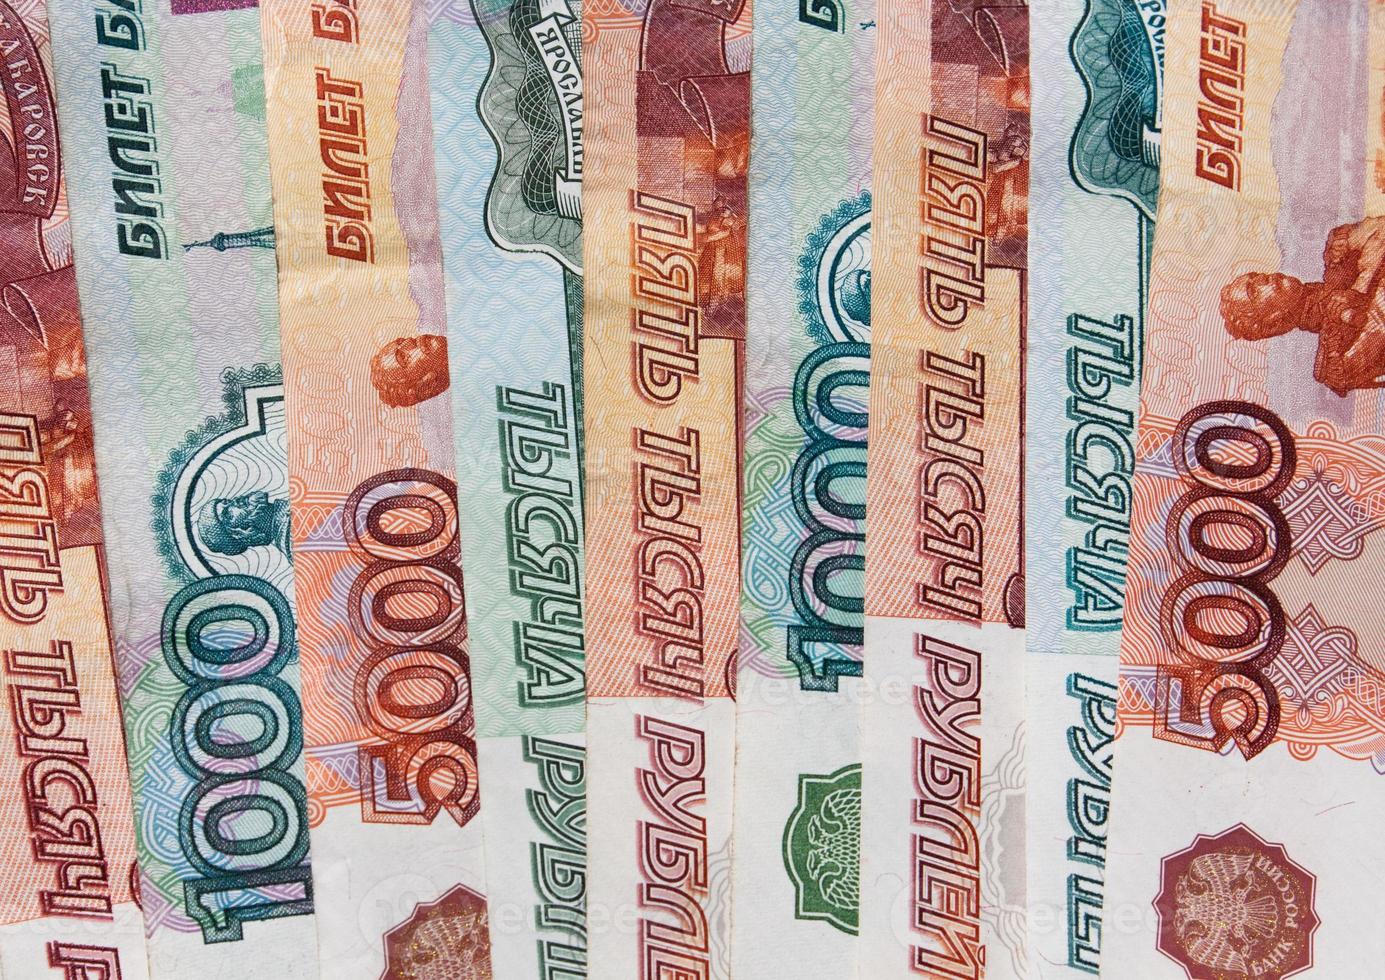 Geld russische Banknoten Würde fünftausend und tausend Rubel foto